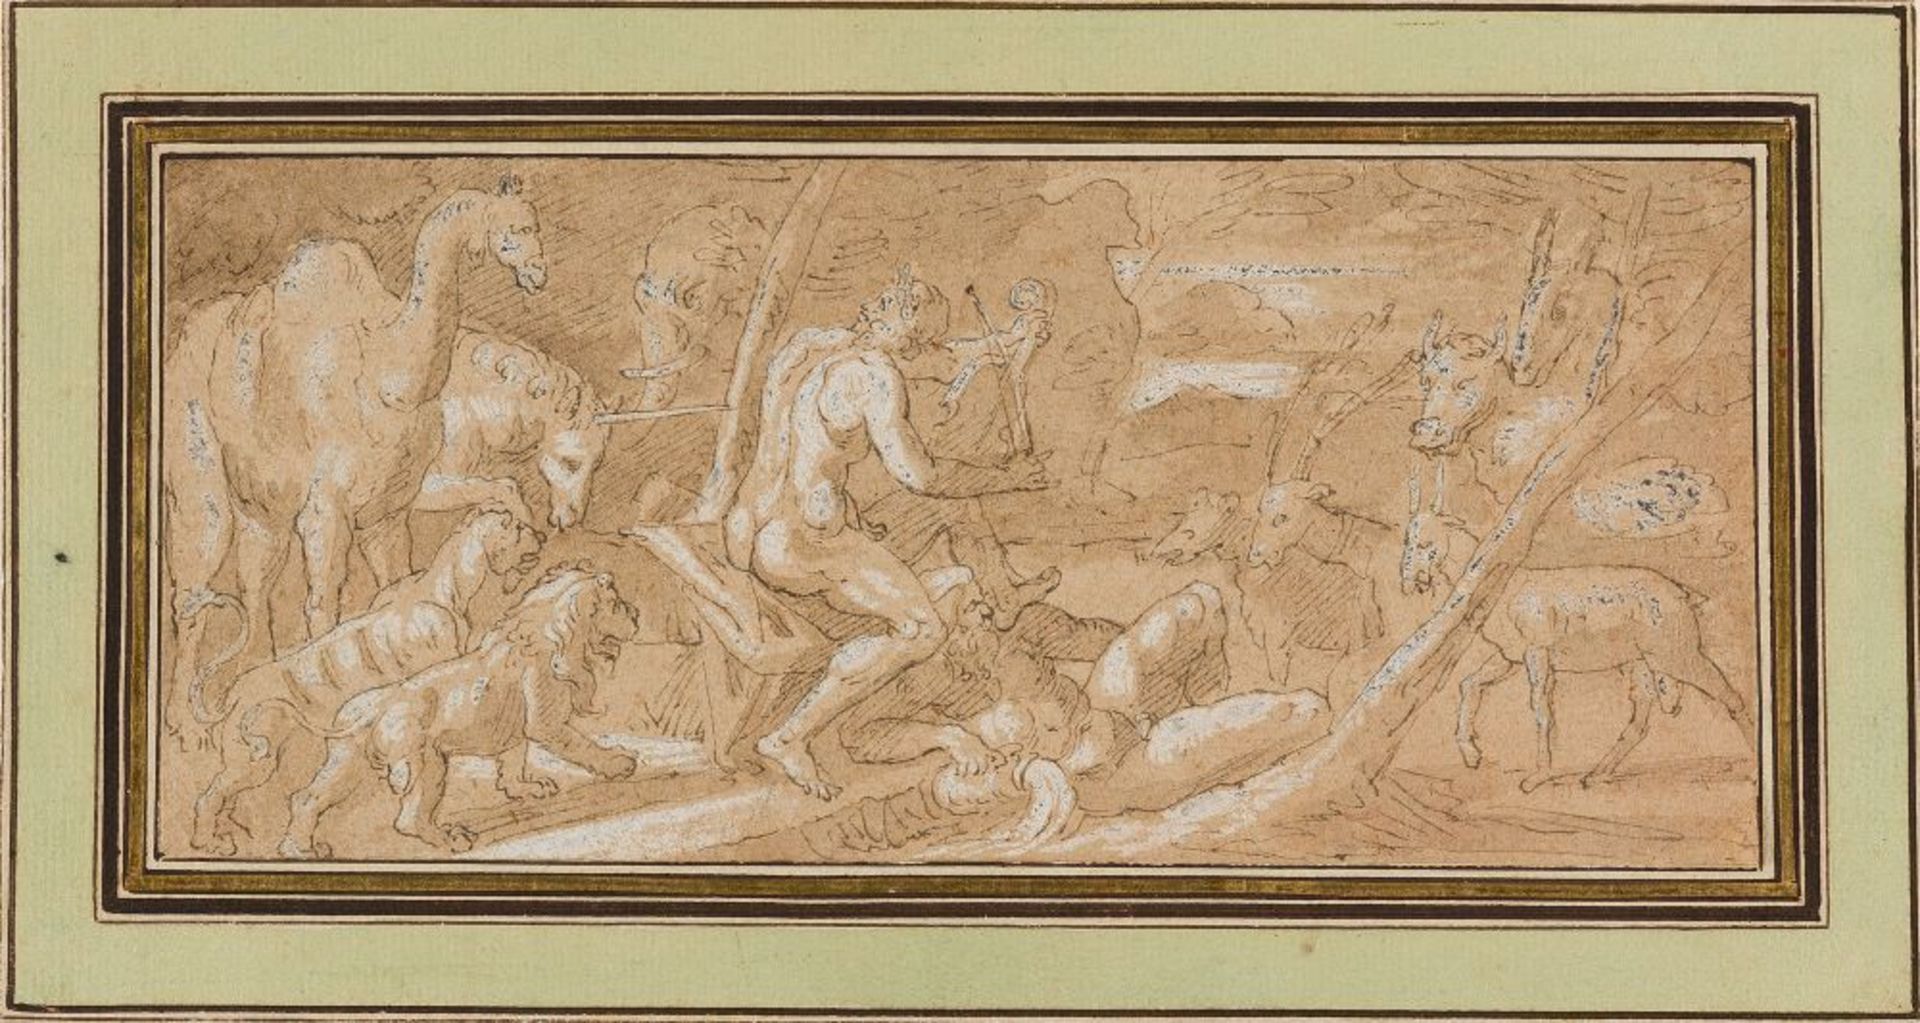 ITALIENISCH      Orpheus besänftigt durch sein Spiel die Tiere.    Feder in Braun, laviert und